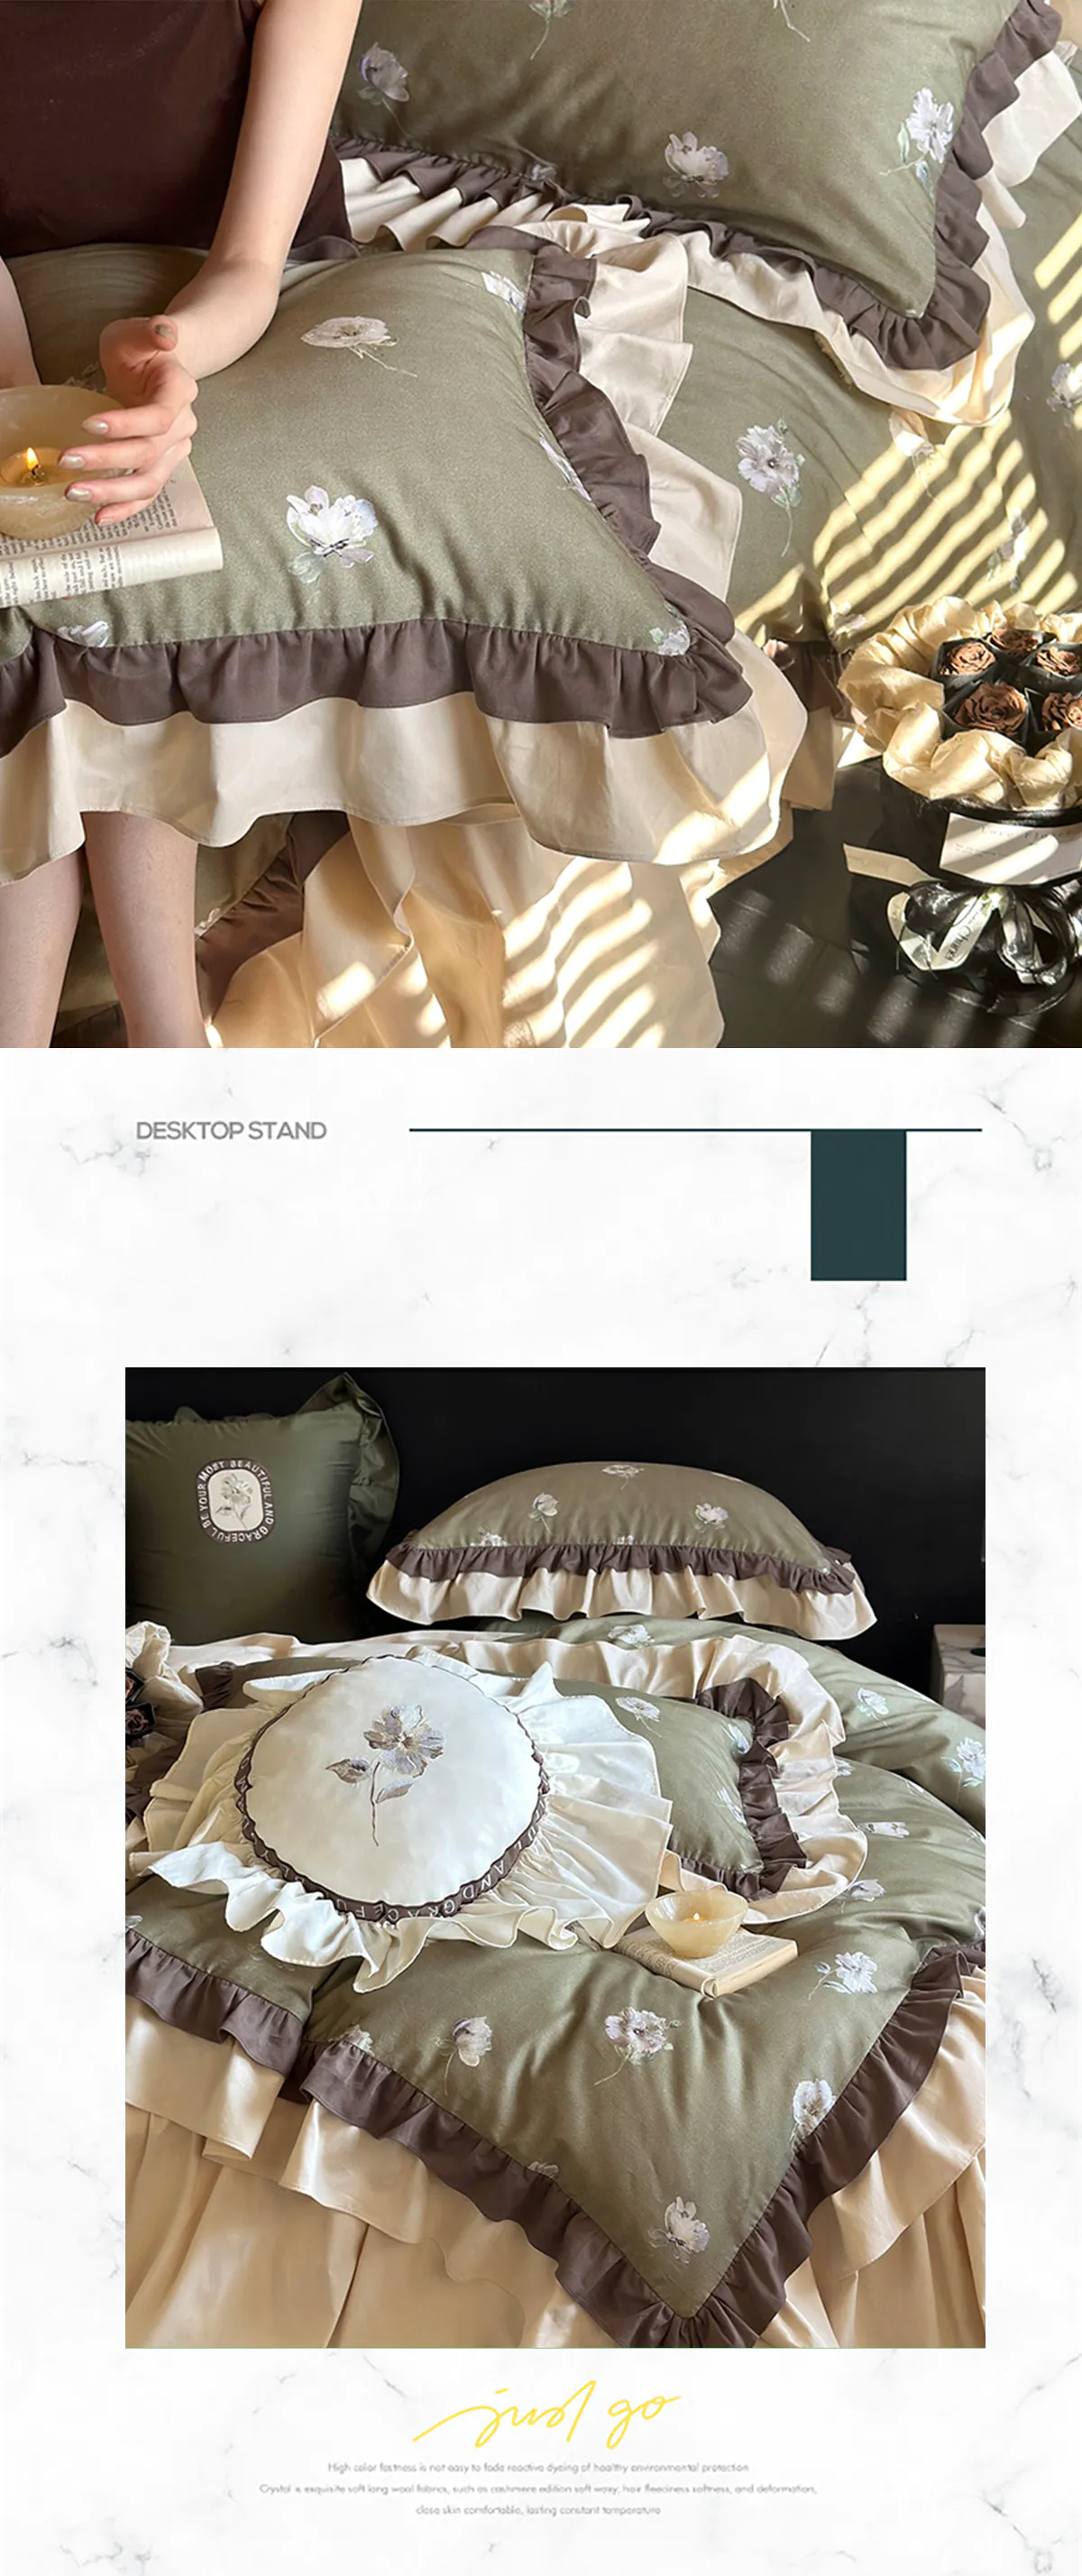 Super-Soft-Floral-Print-Cotton-Matte-Bedding-Set-Queen-King-Size14